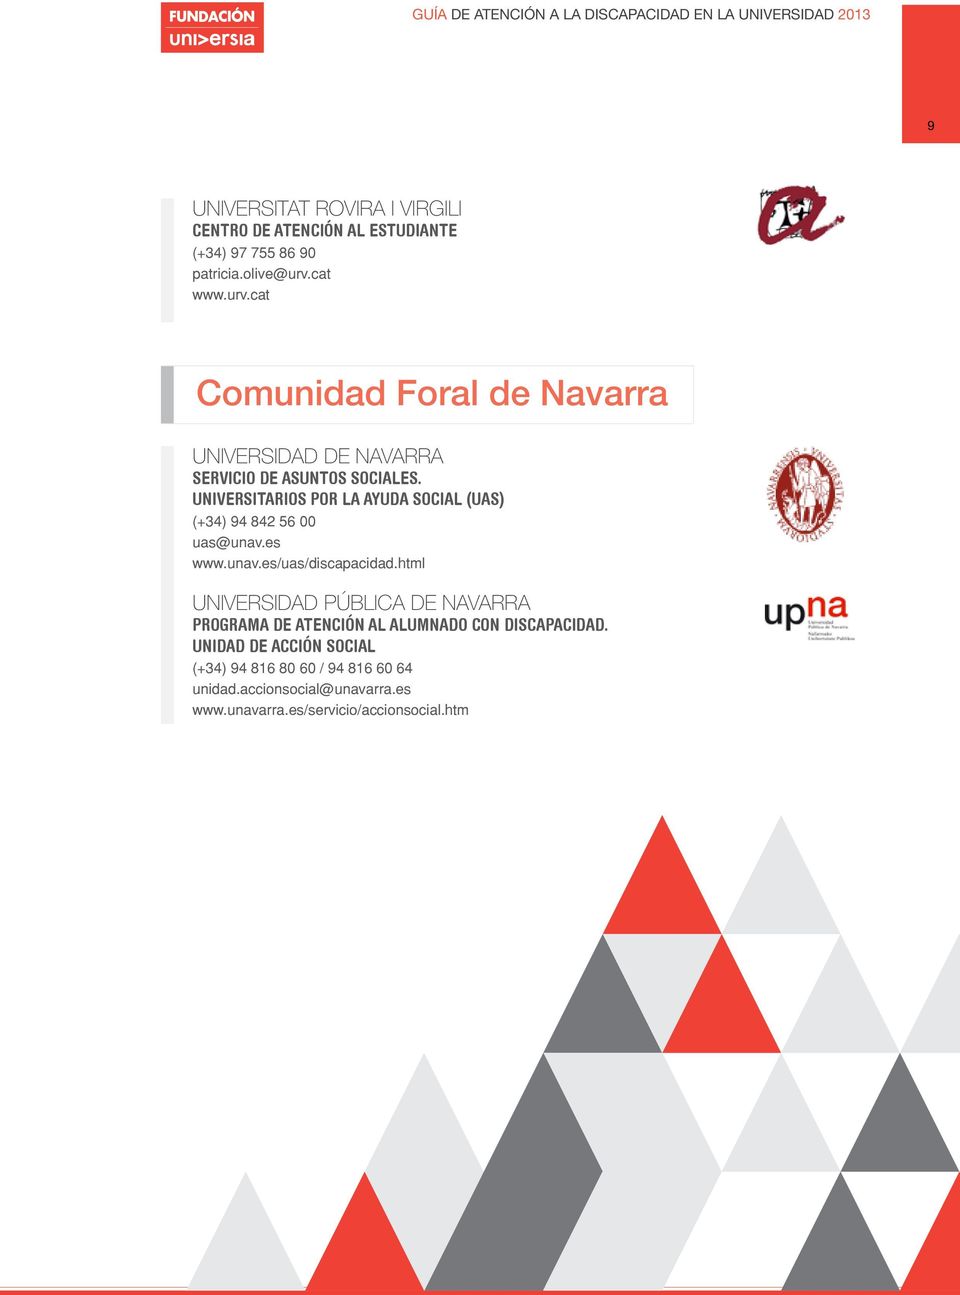 niversitarios por la ayda social (as) (+34) 94 842 56 00 as@nav.es www.nav.es/as/discapacidad.